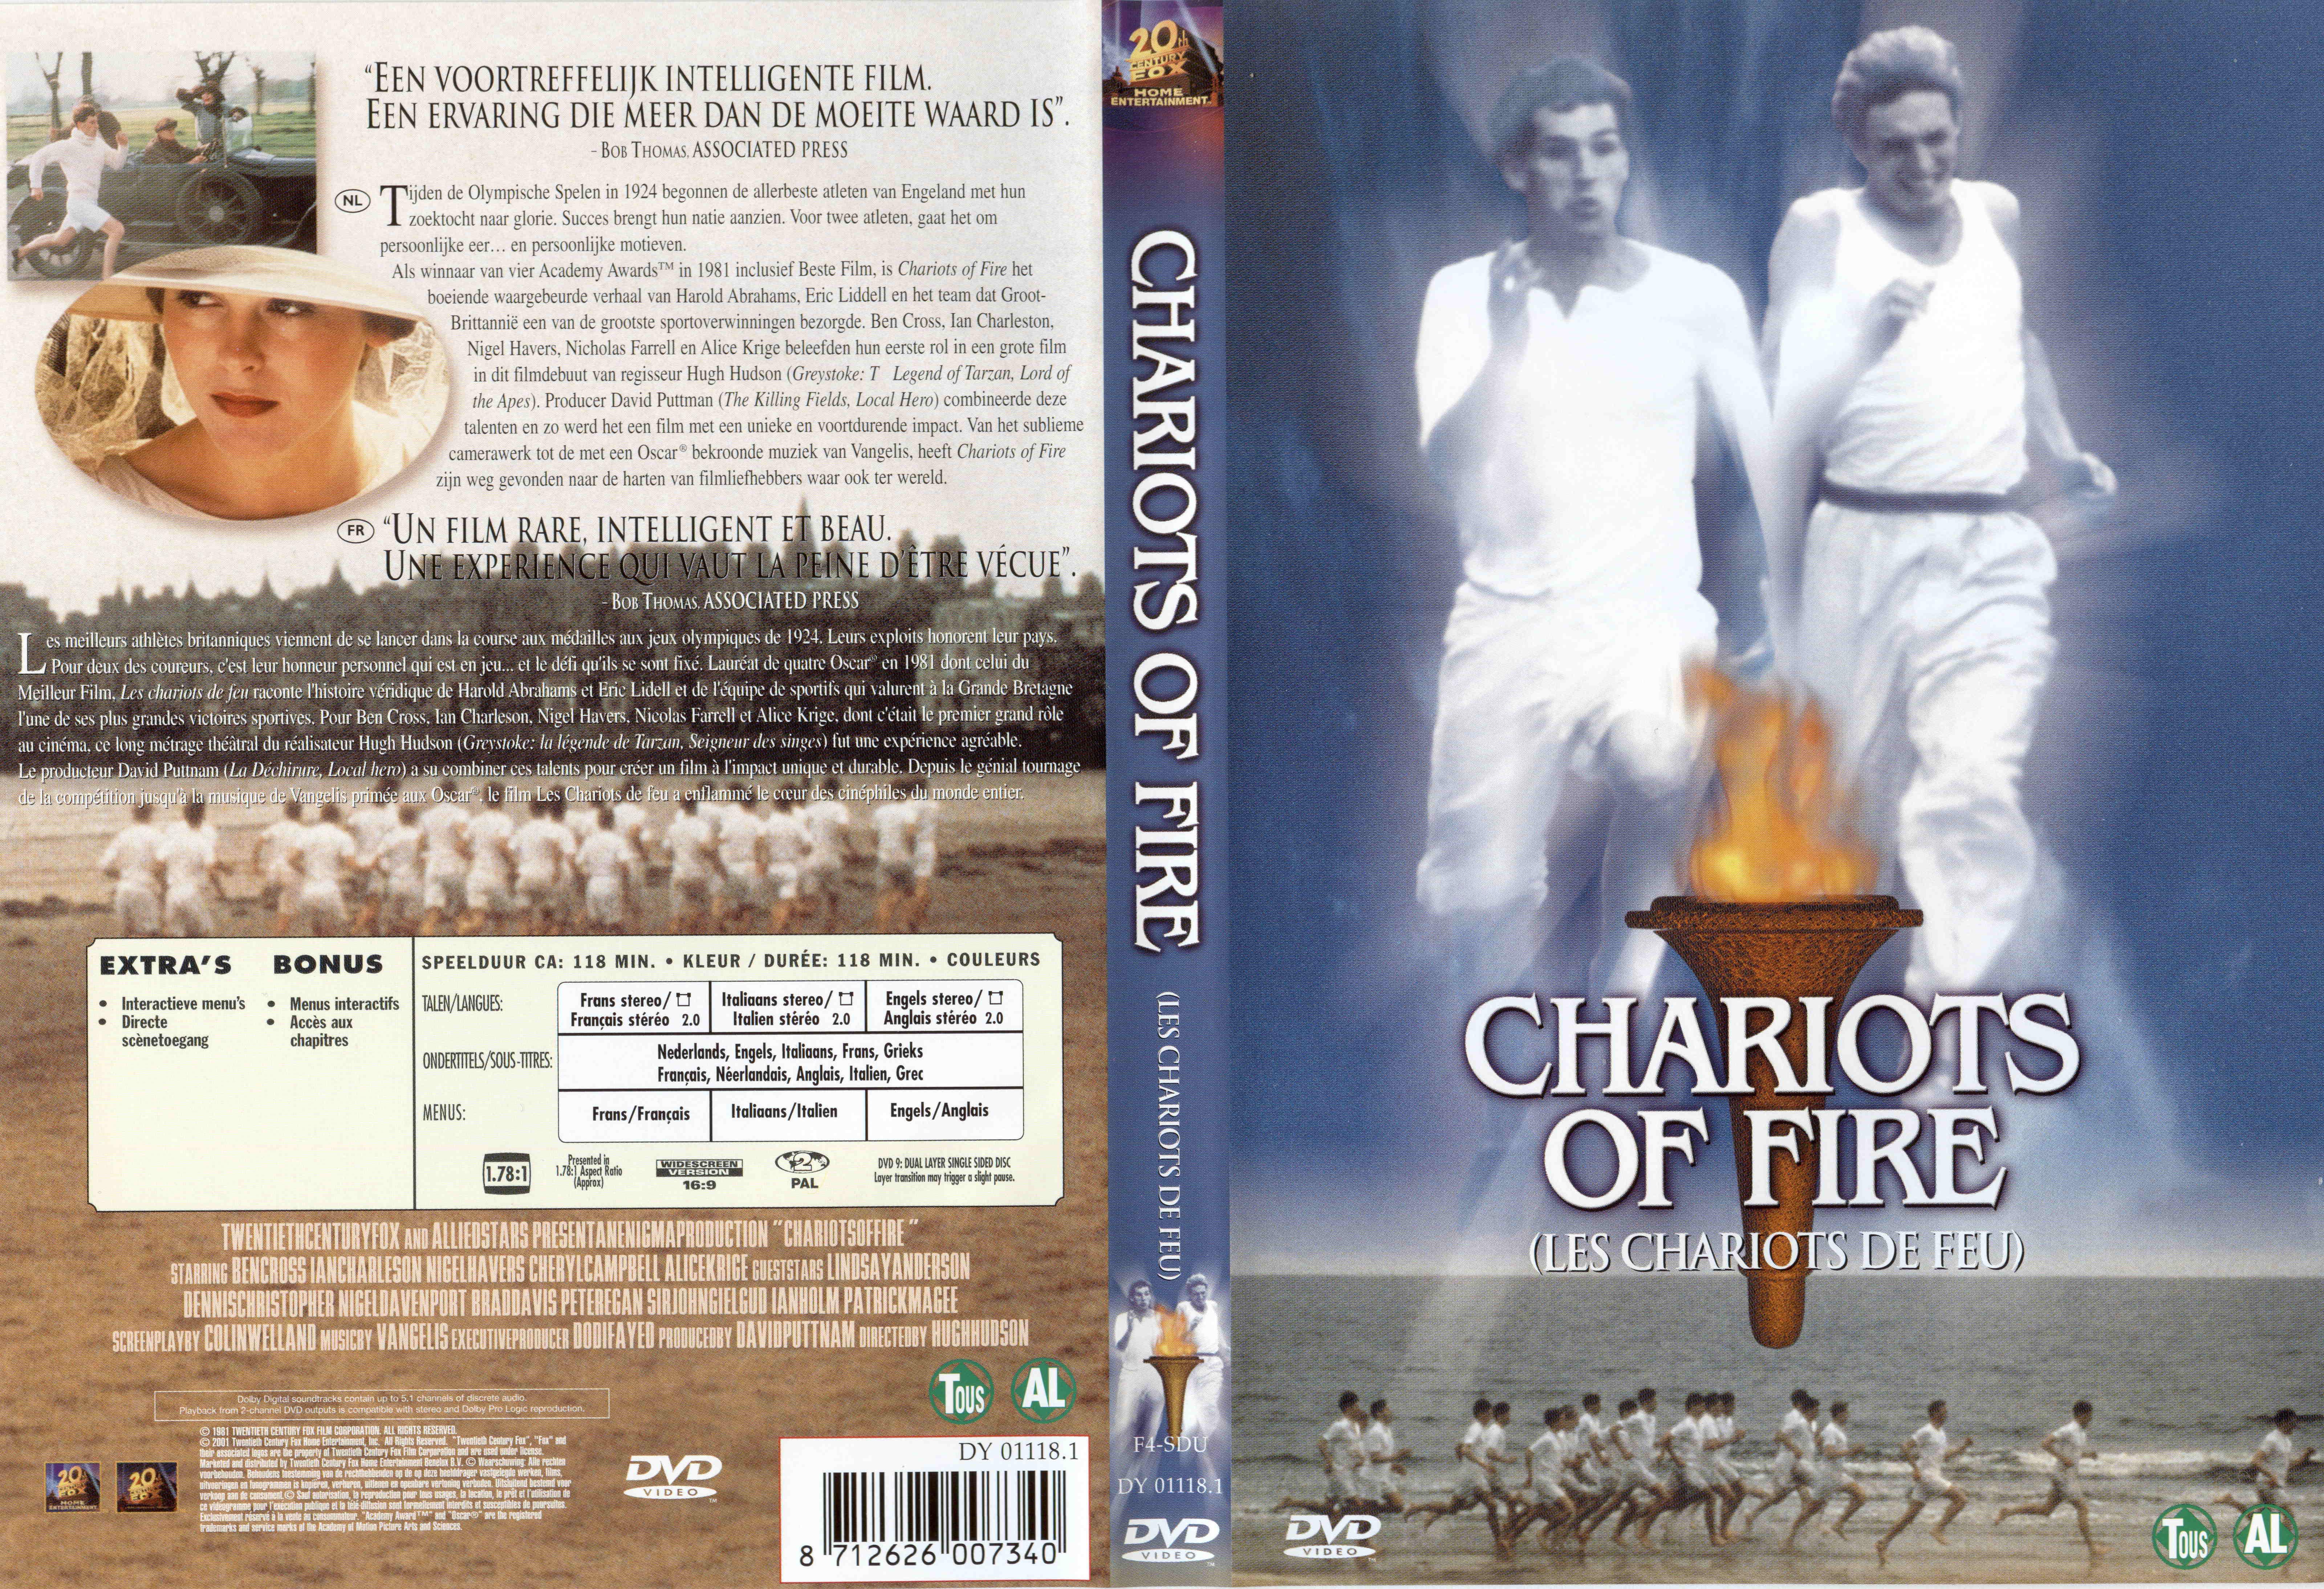 Jaquette DVD Les chariots de feu v2